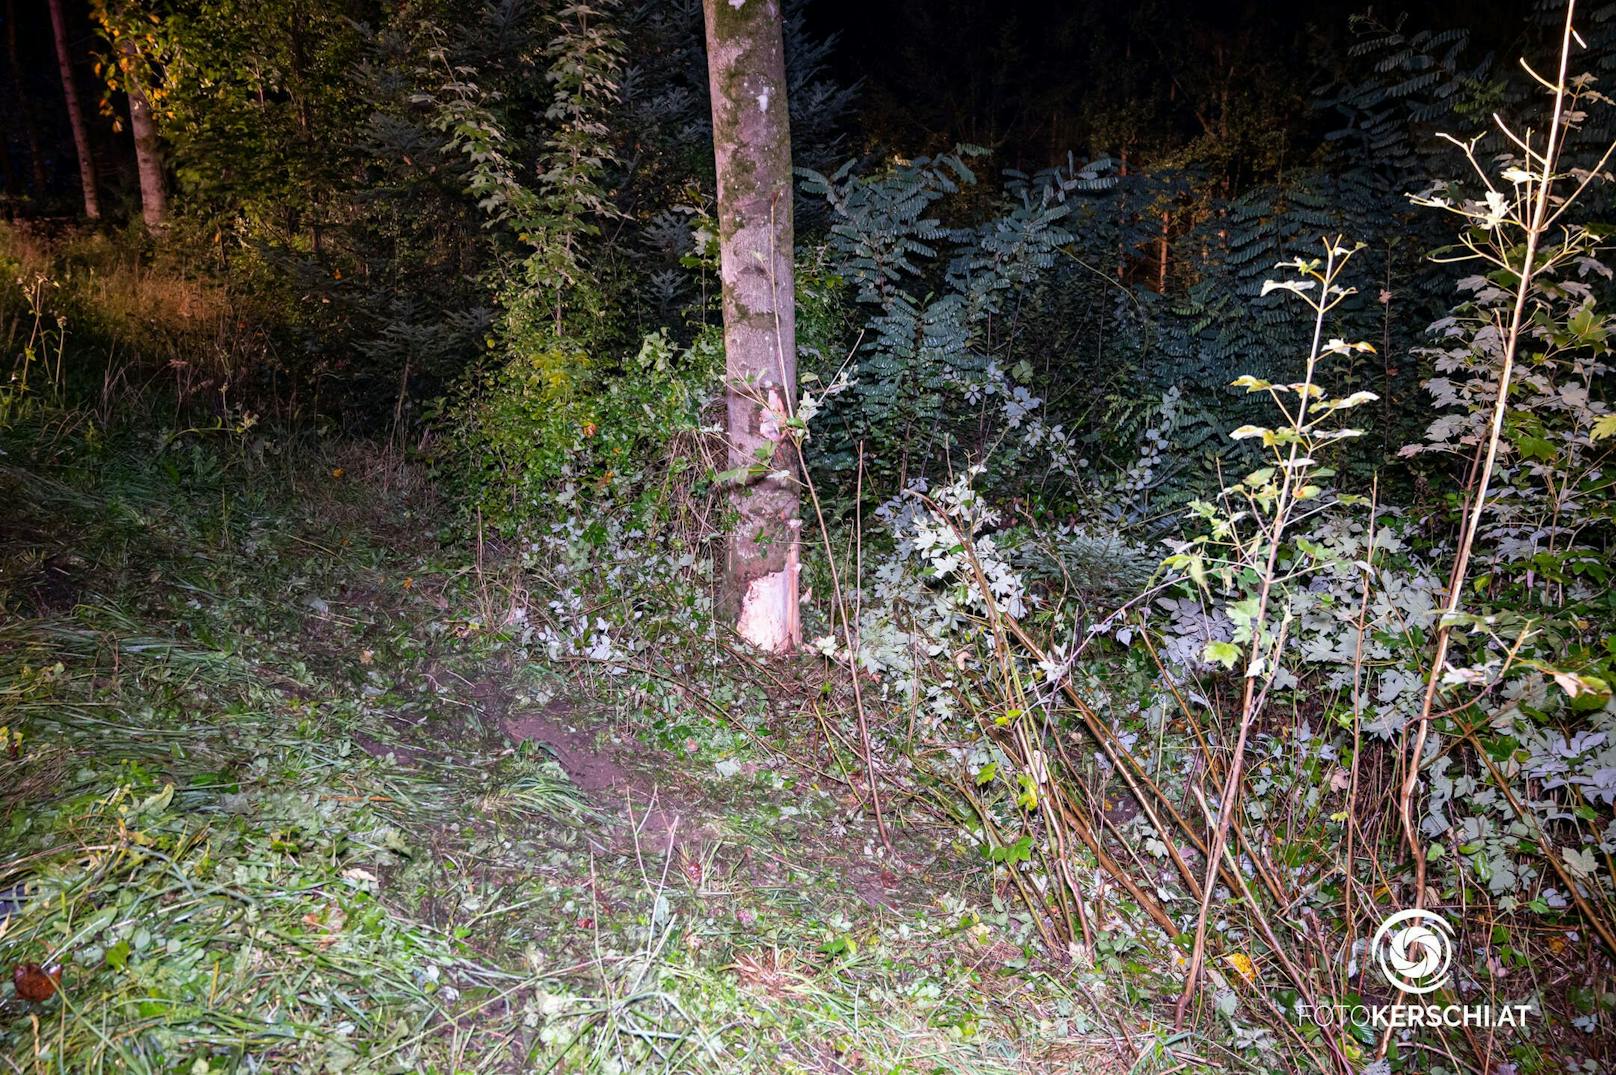 In Arbing kam in der Nacht auf Sonntag ein Fahrzeug von der Straße ab und prallte gegen einen Baum.